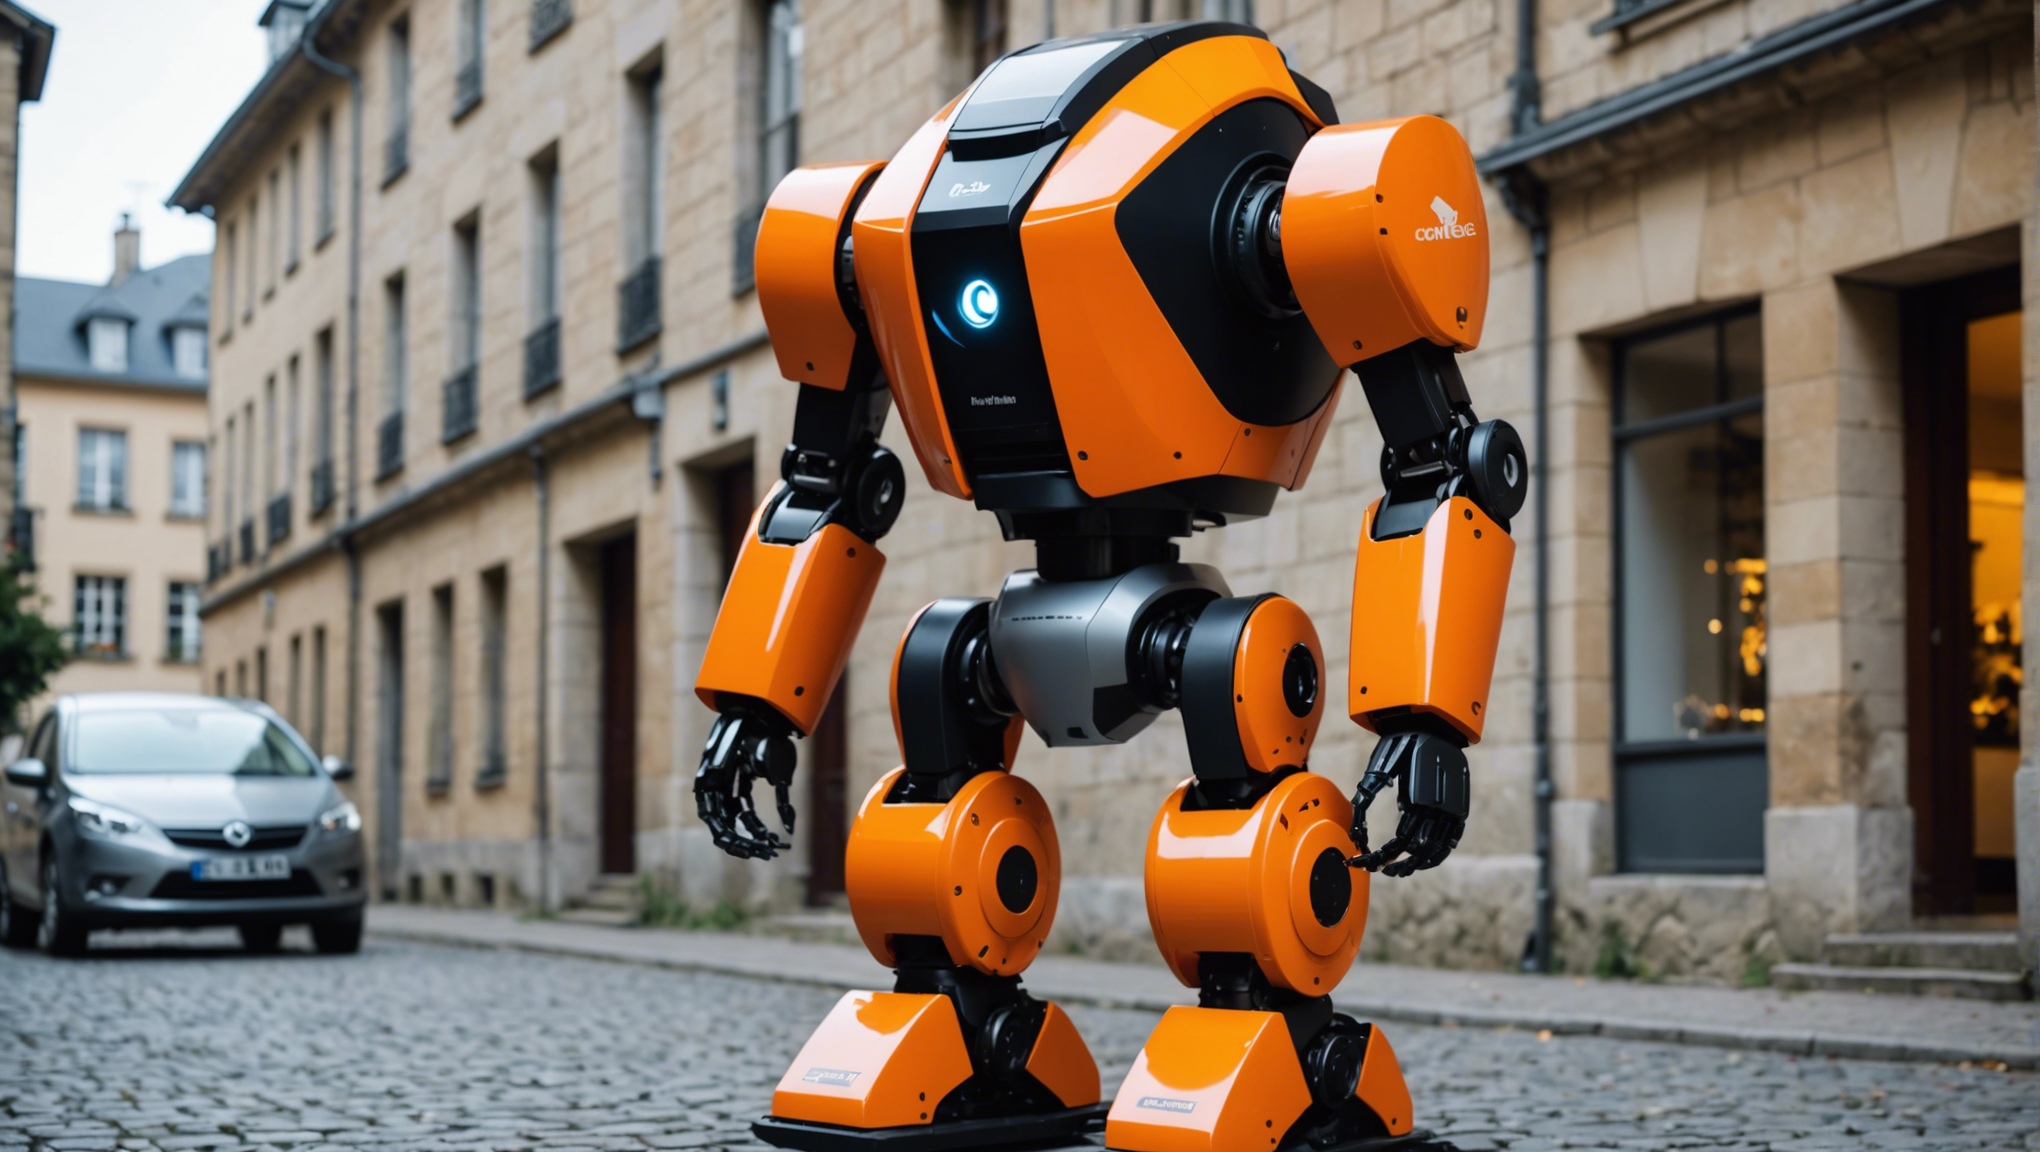 louez un robot en corrèze pour simplifier vos tâches quotidiennes avec facilité ! besoin d'aide ? découvrez notre service de location de robots.